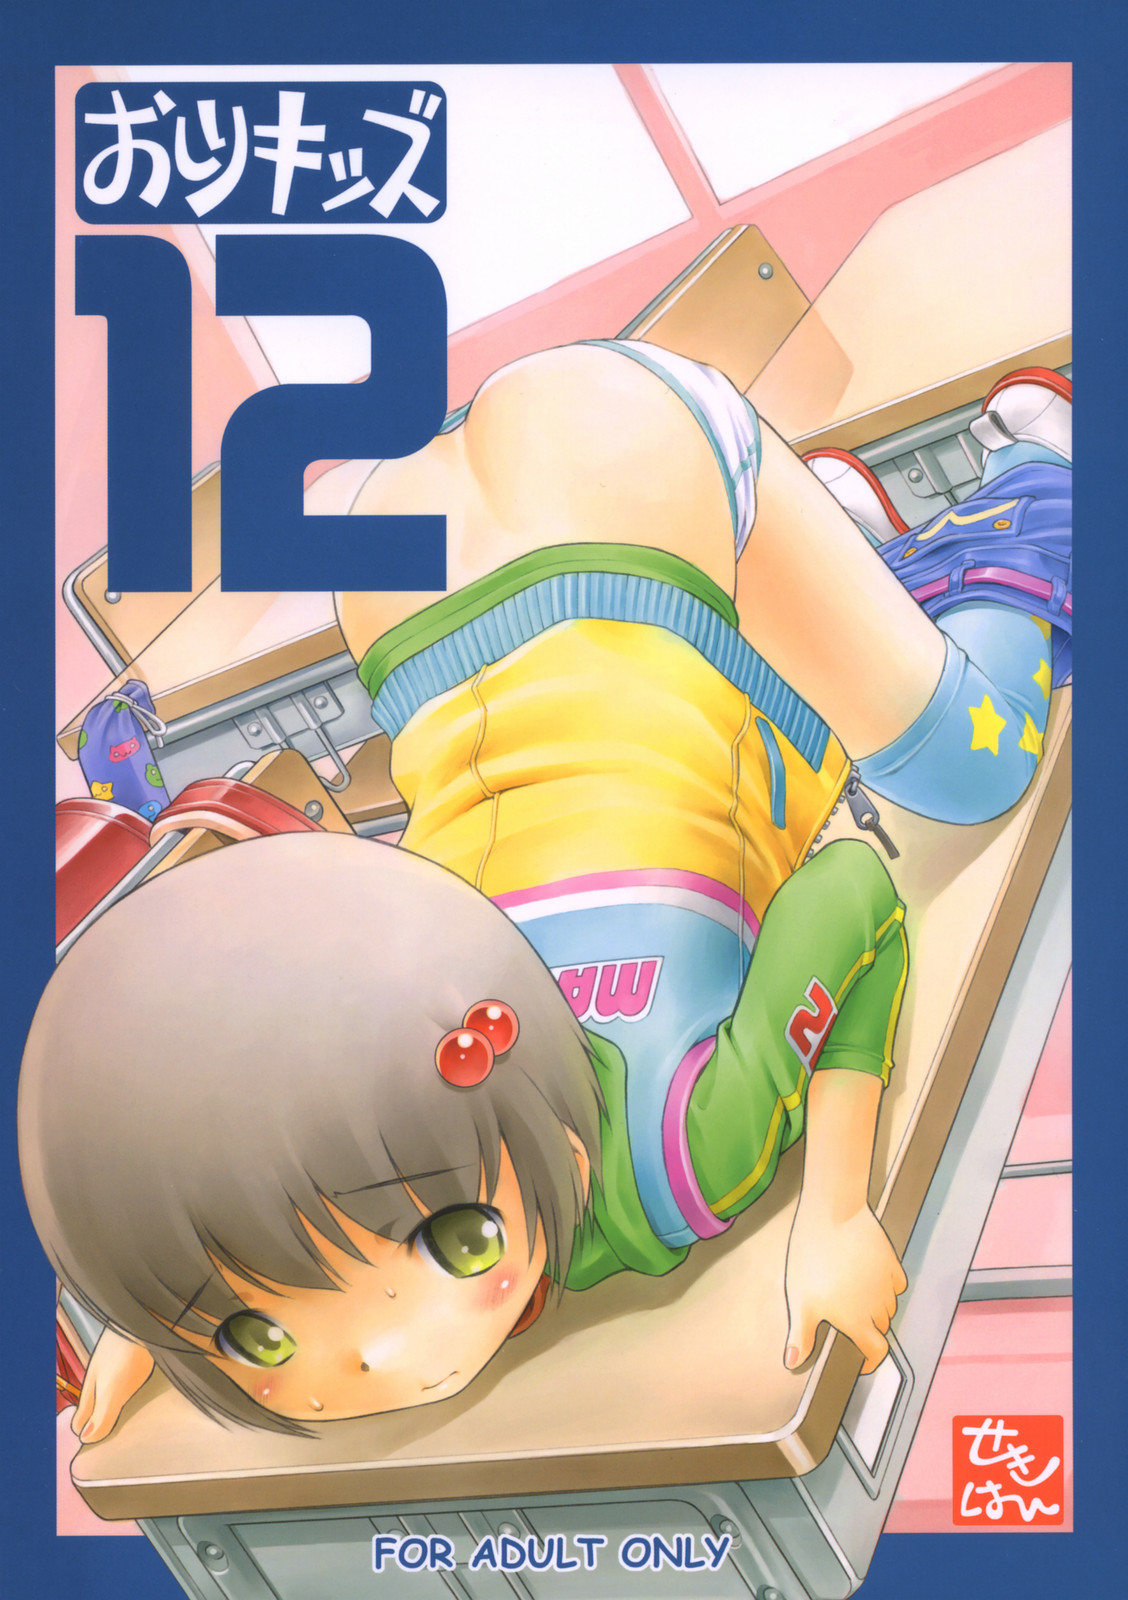 Oshiri Kizzu 12 original hentai manga